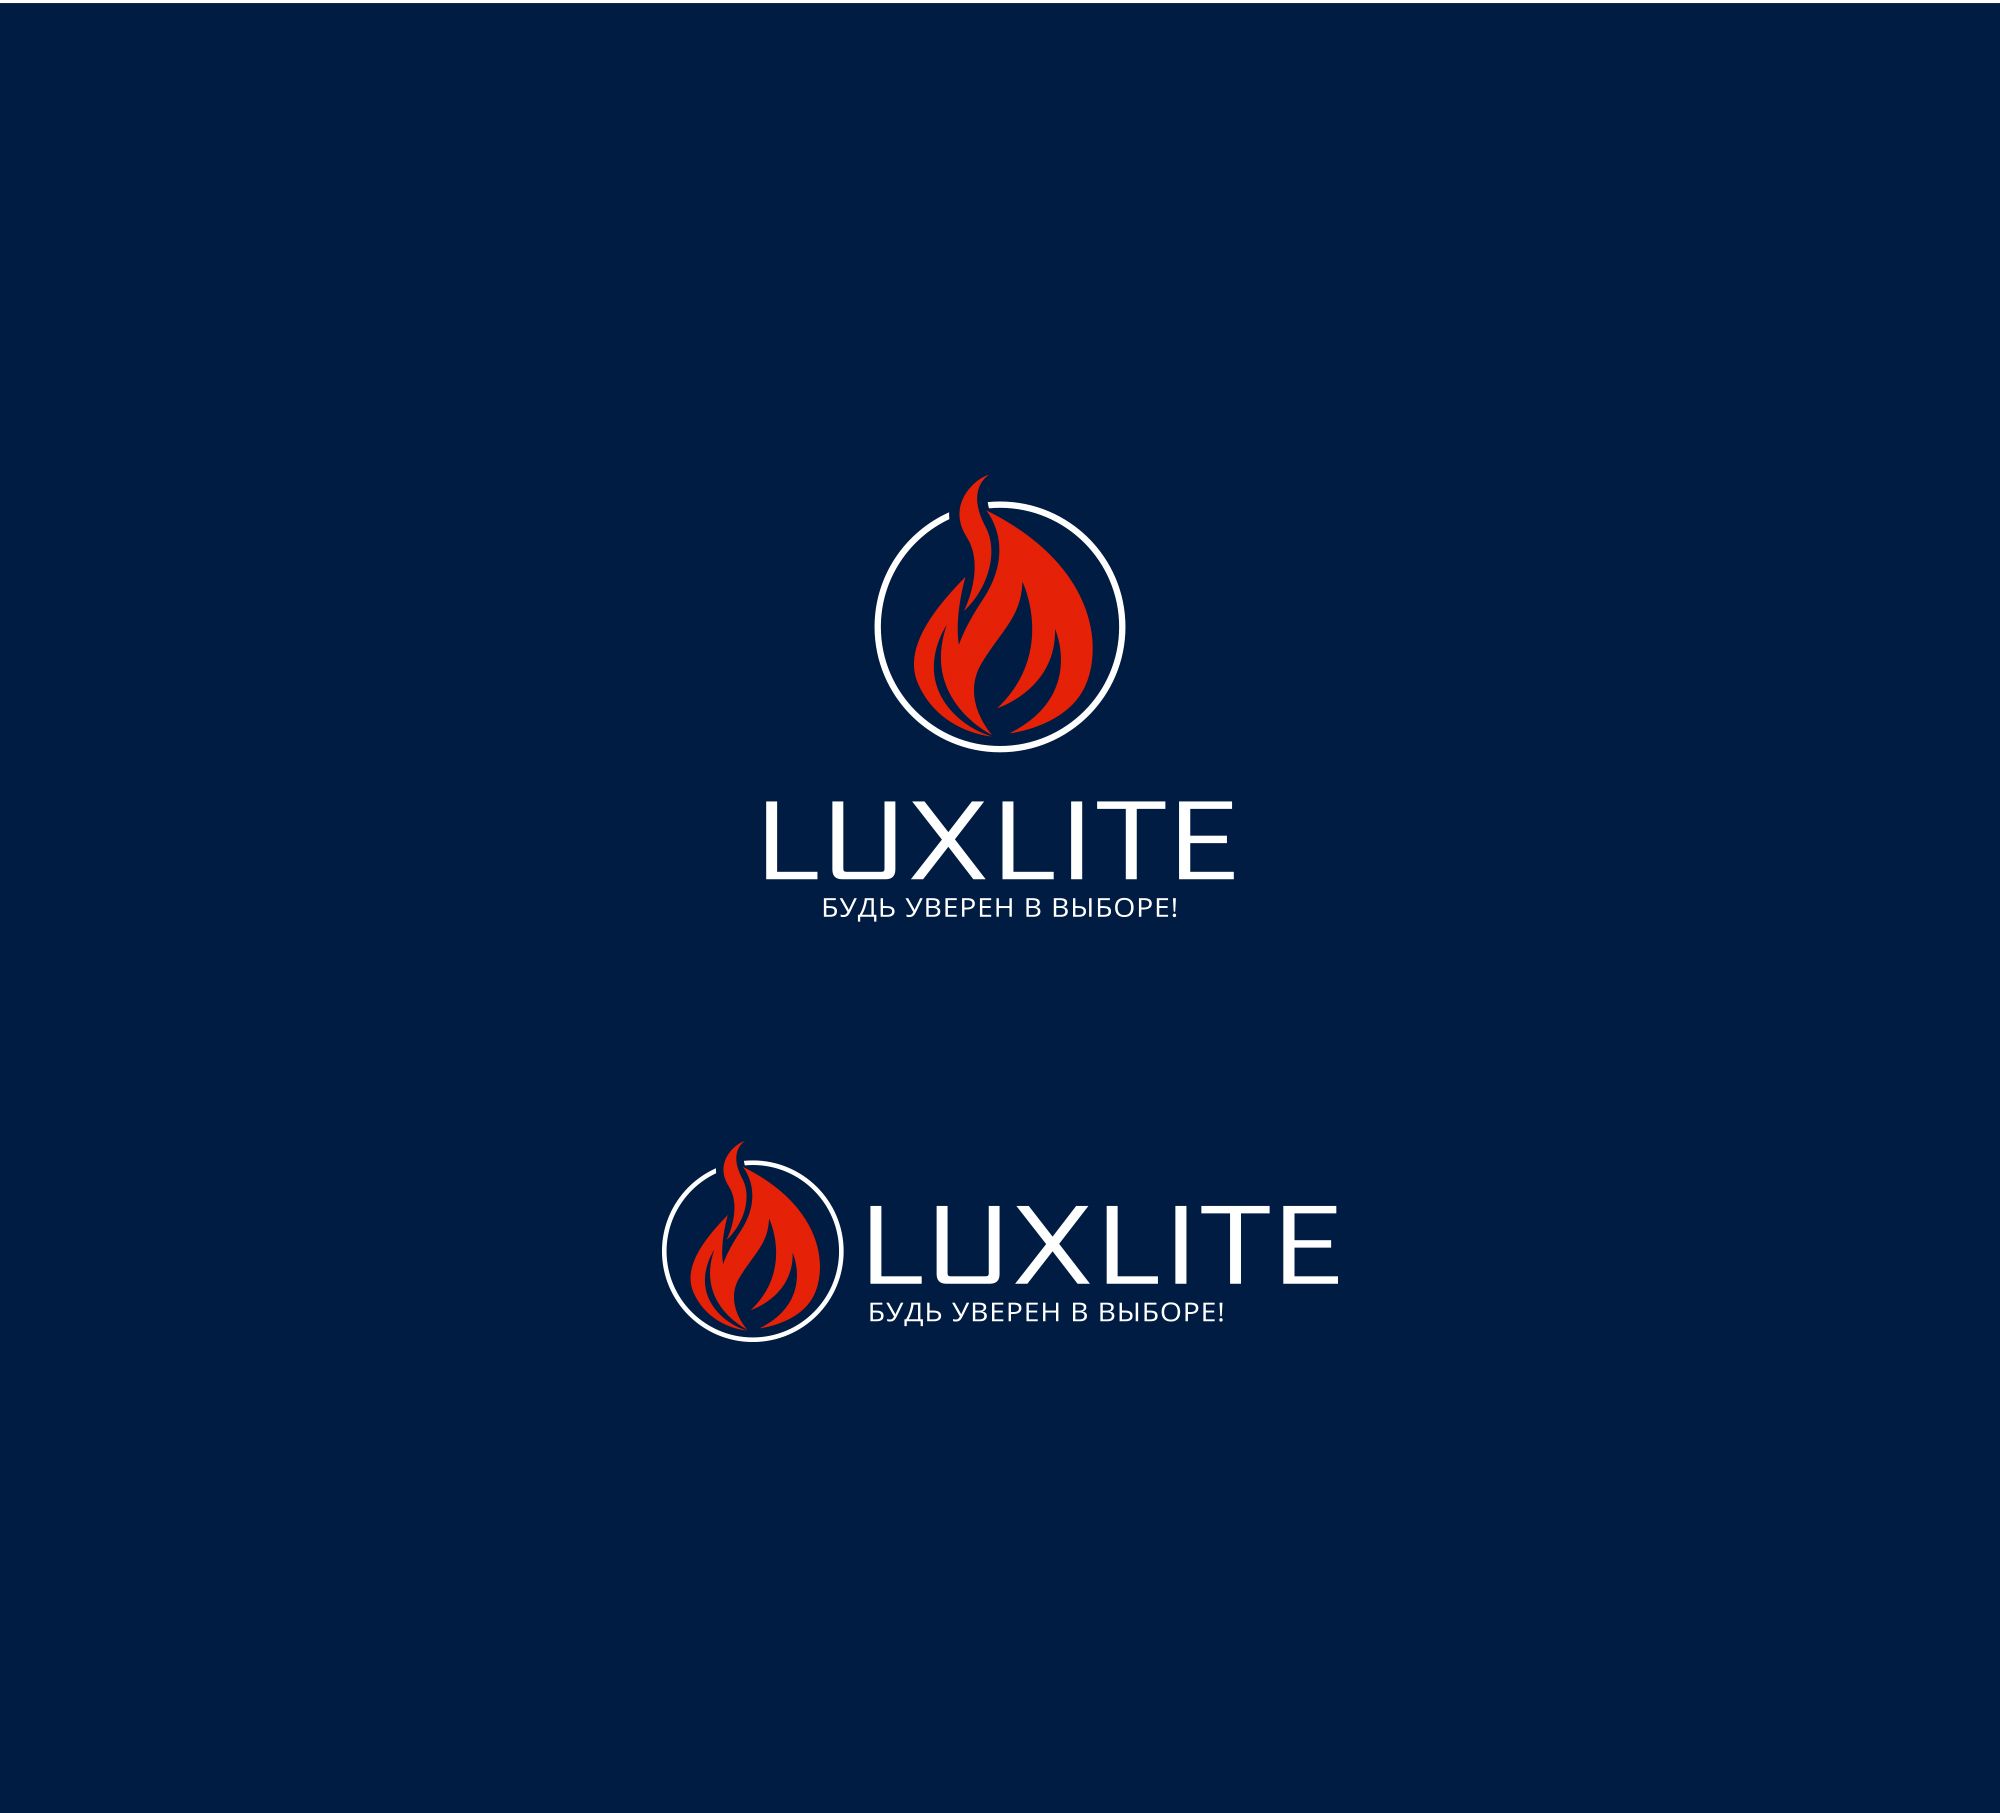 Лого и фирменный стиль для Luxlite - дизайнер flaffi555